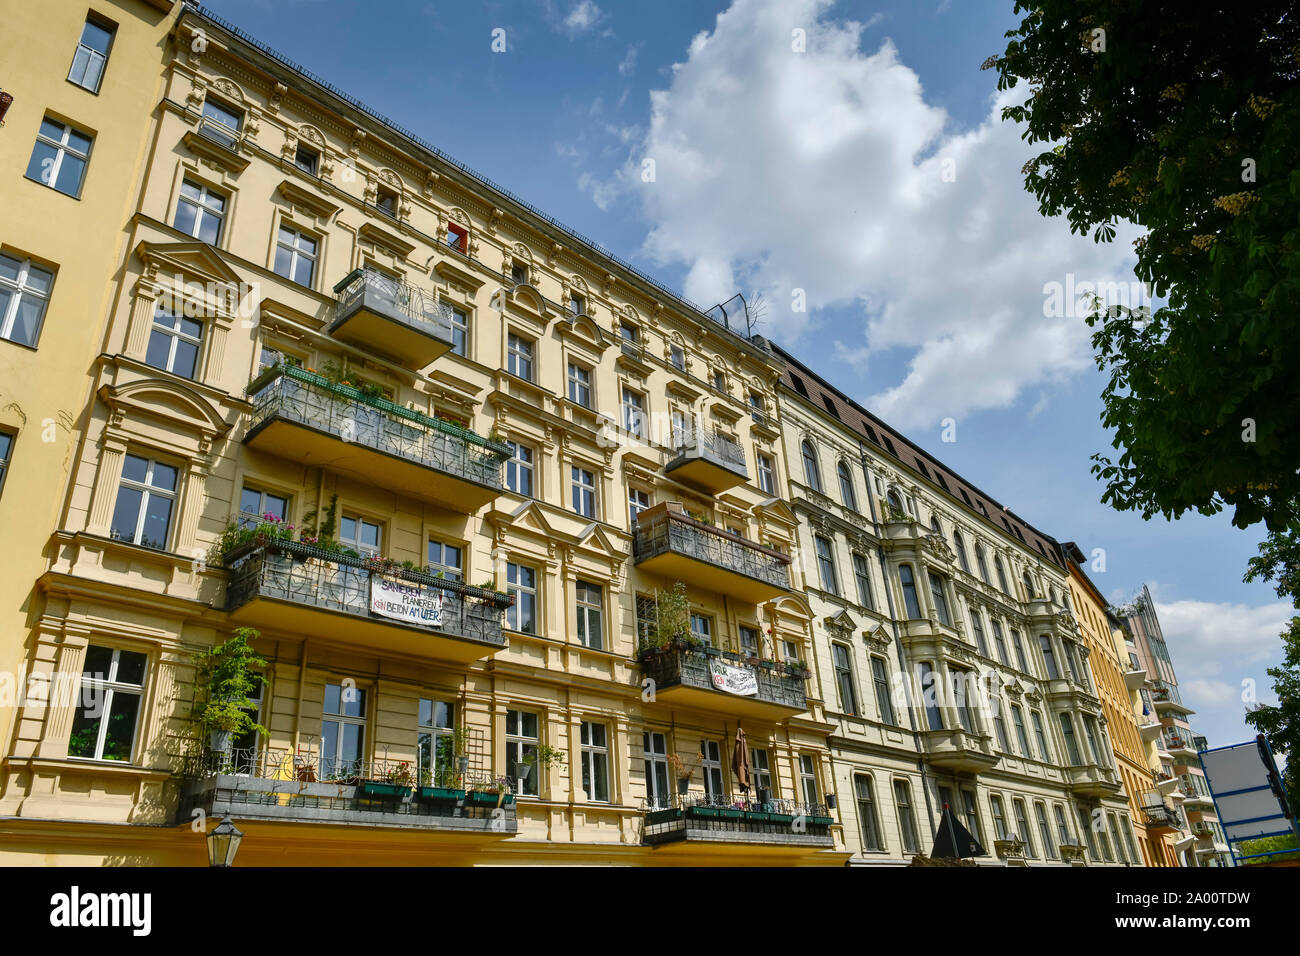 Altbauten, Fraenkelufer, Kreuzberg, Berlin, Deutschland Stock Photo